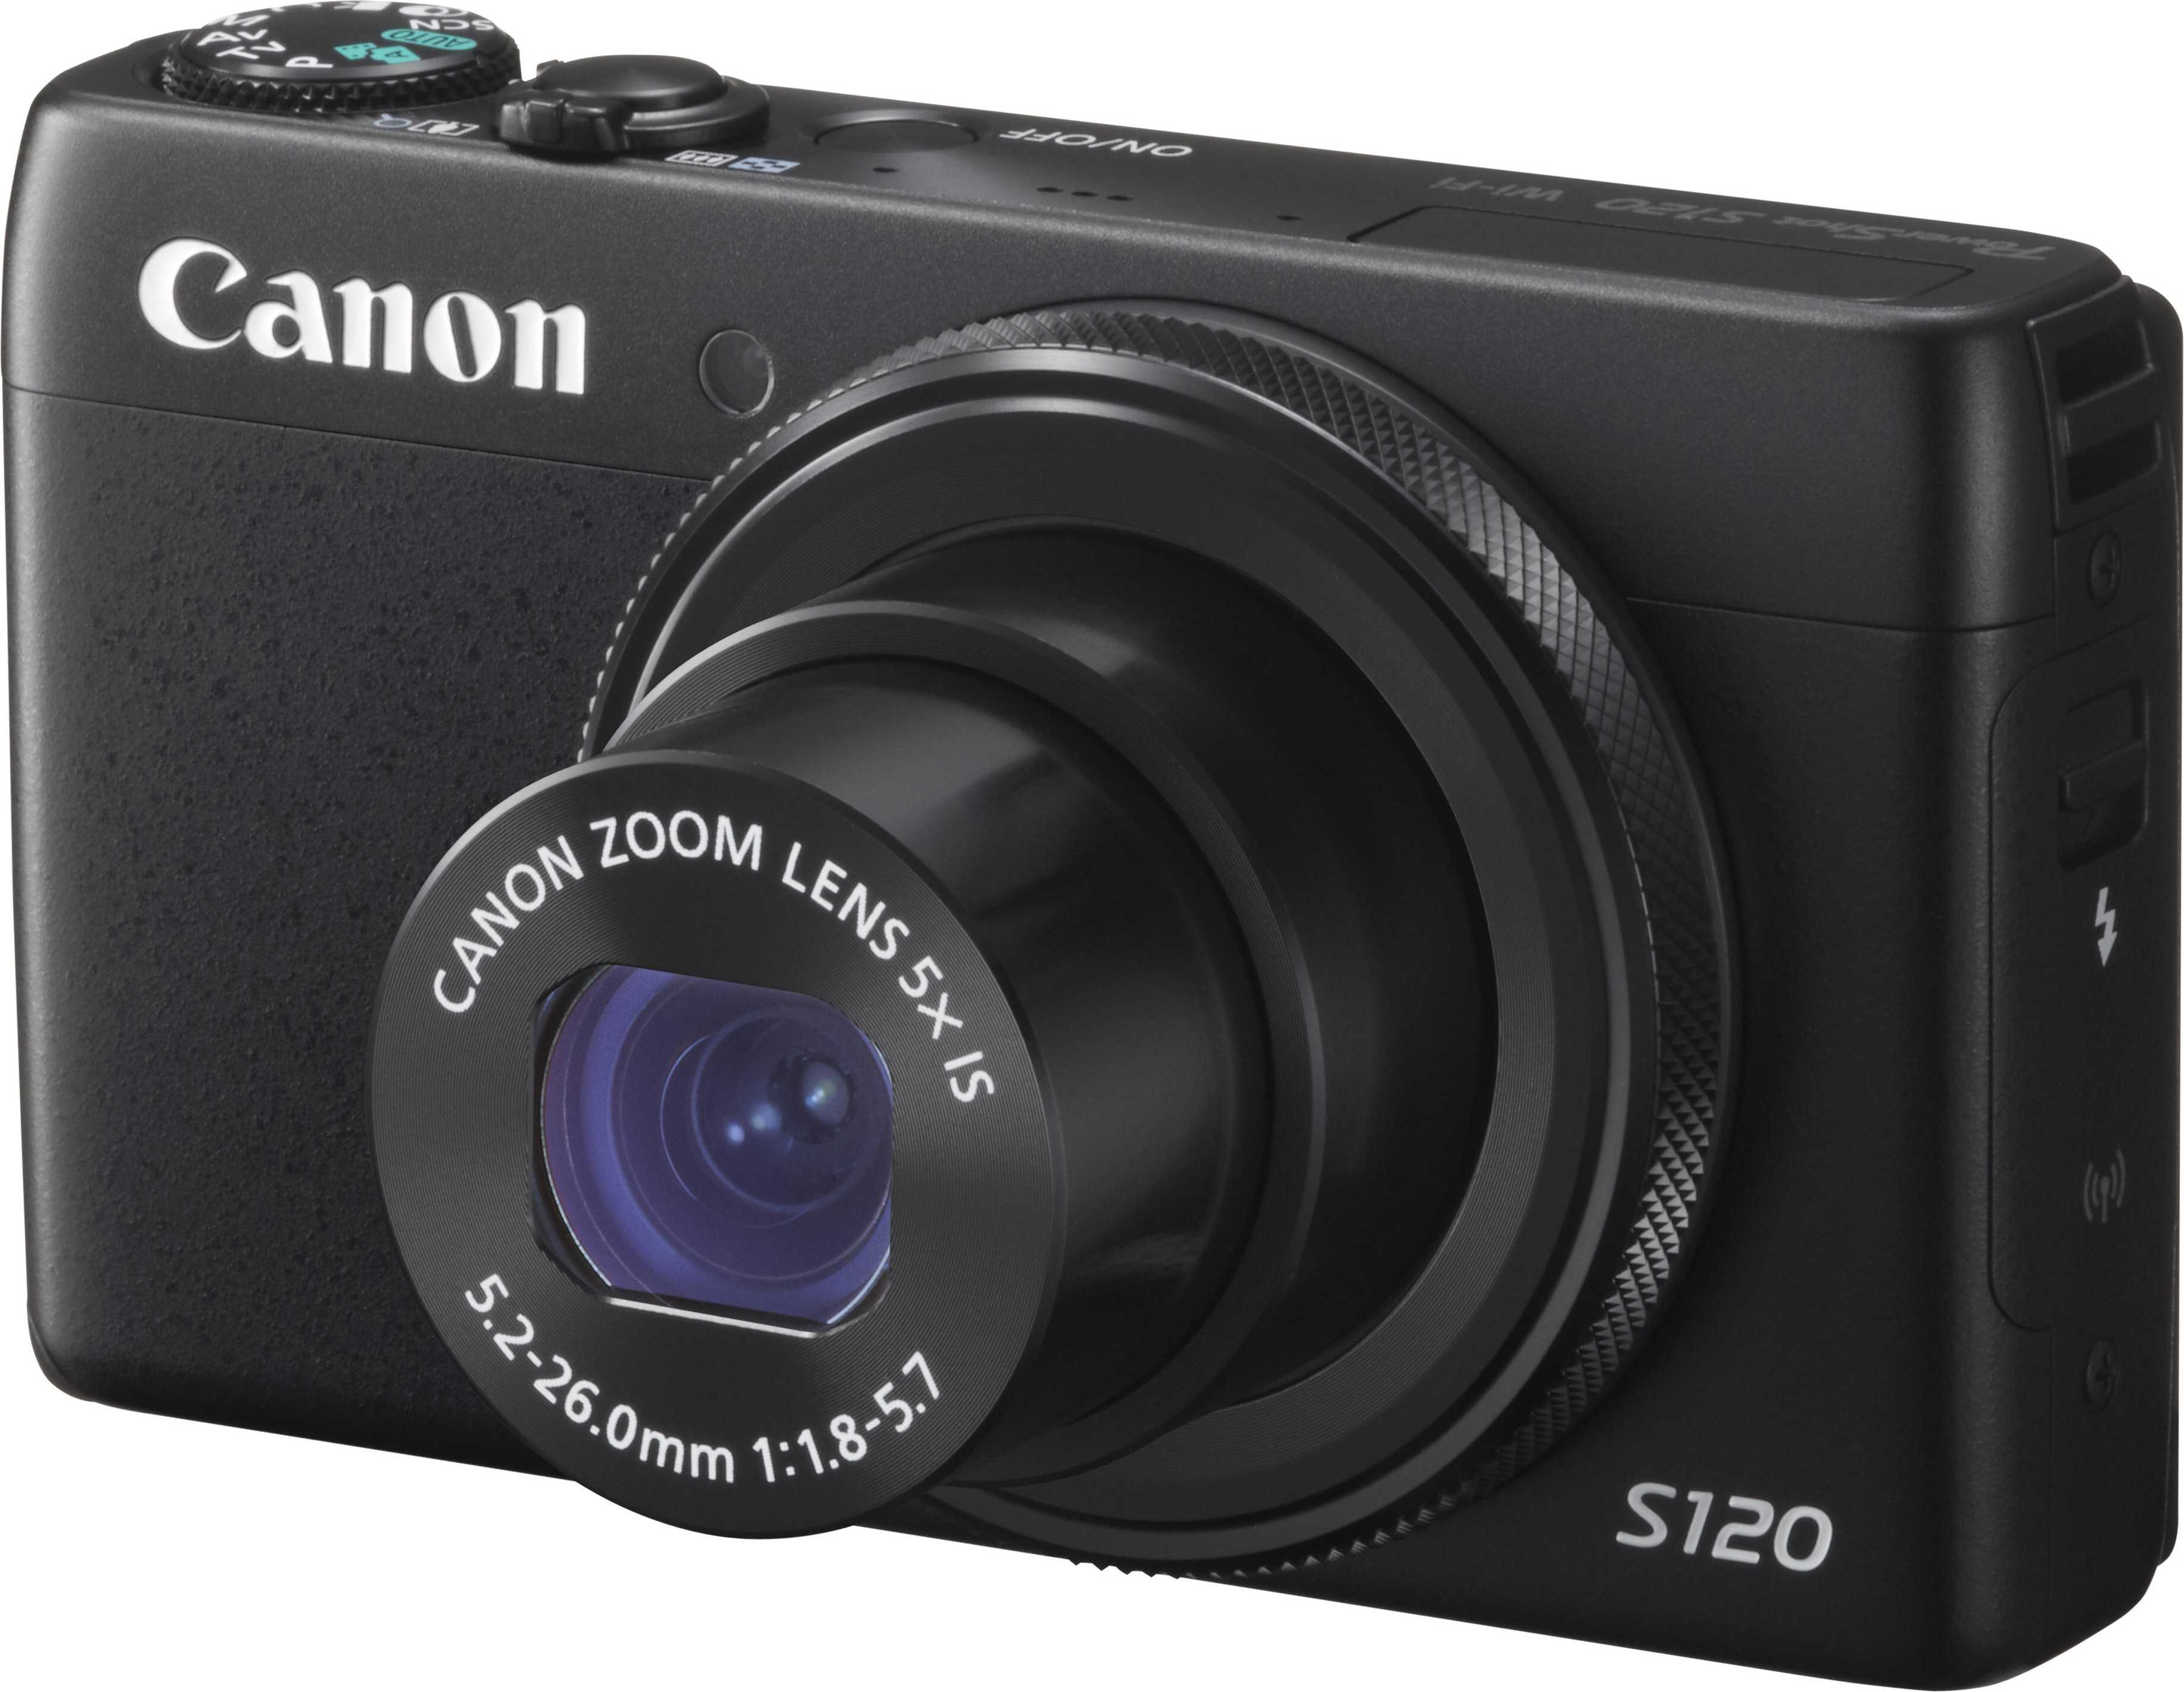 Фотоаппарат canon powershot s120 — купить, цена и характеристики, отзывы